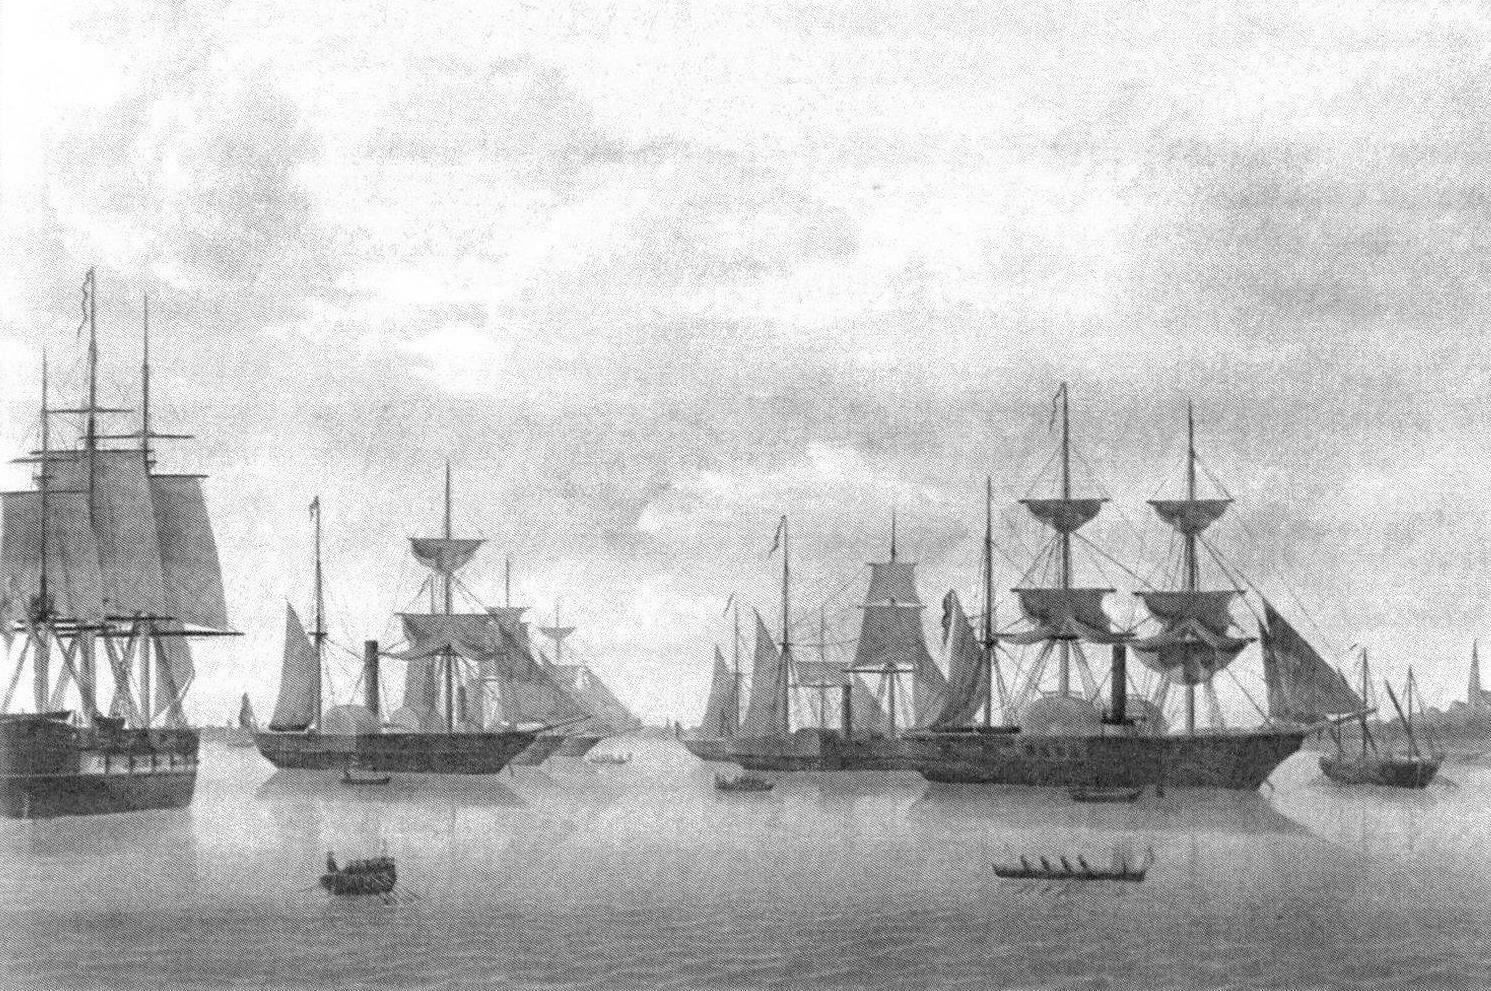 Рейхсфлот в 1850 году в Бремерхафене: «Дойчланд», «Гамбург», «Бремен», «Любек», «Барбаросса», «Дер Кониглихе Эрнст Август» и «Ганза» (слева направо)